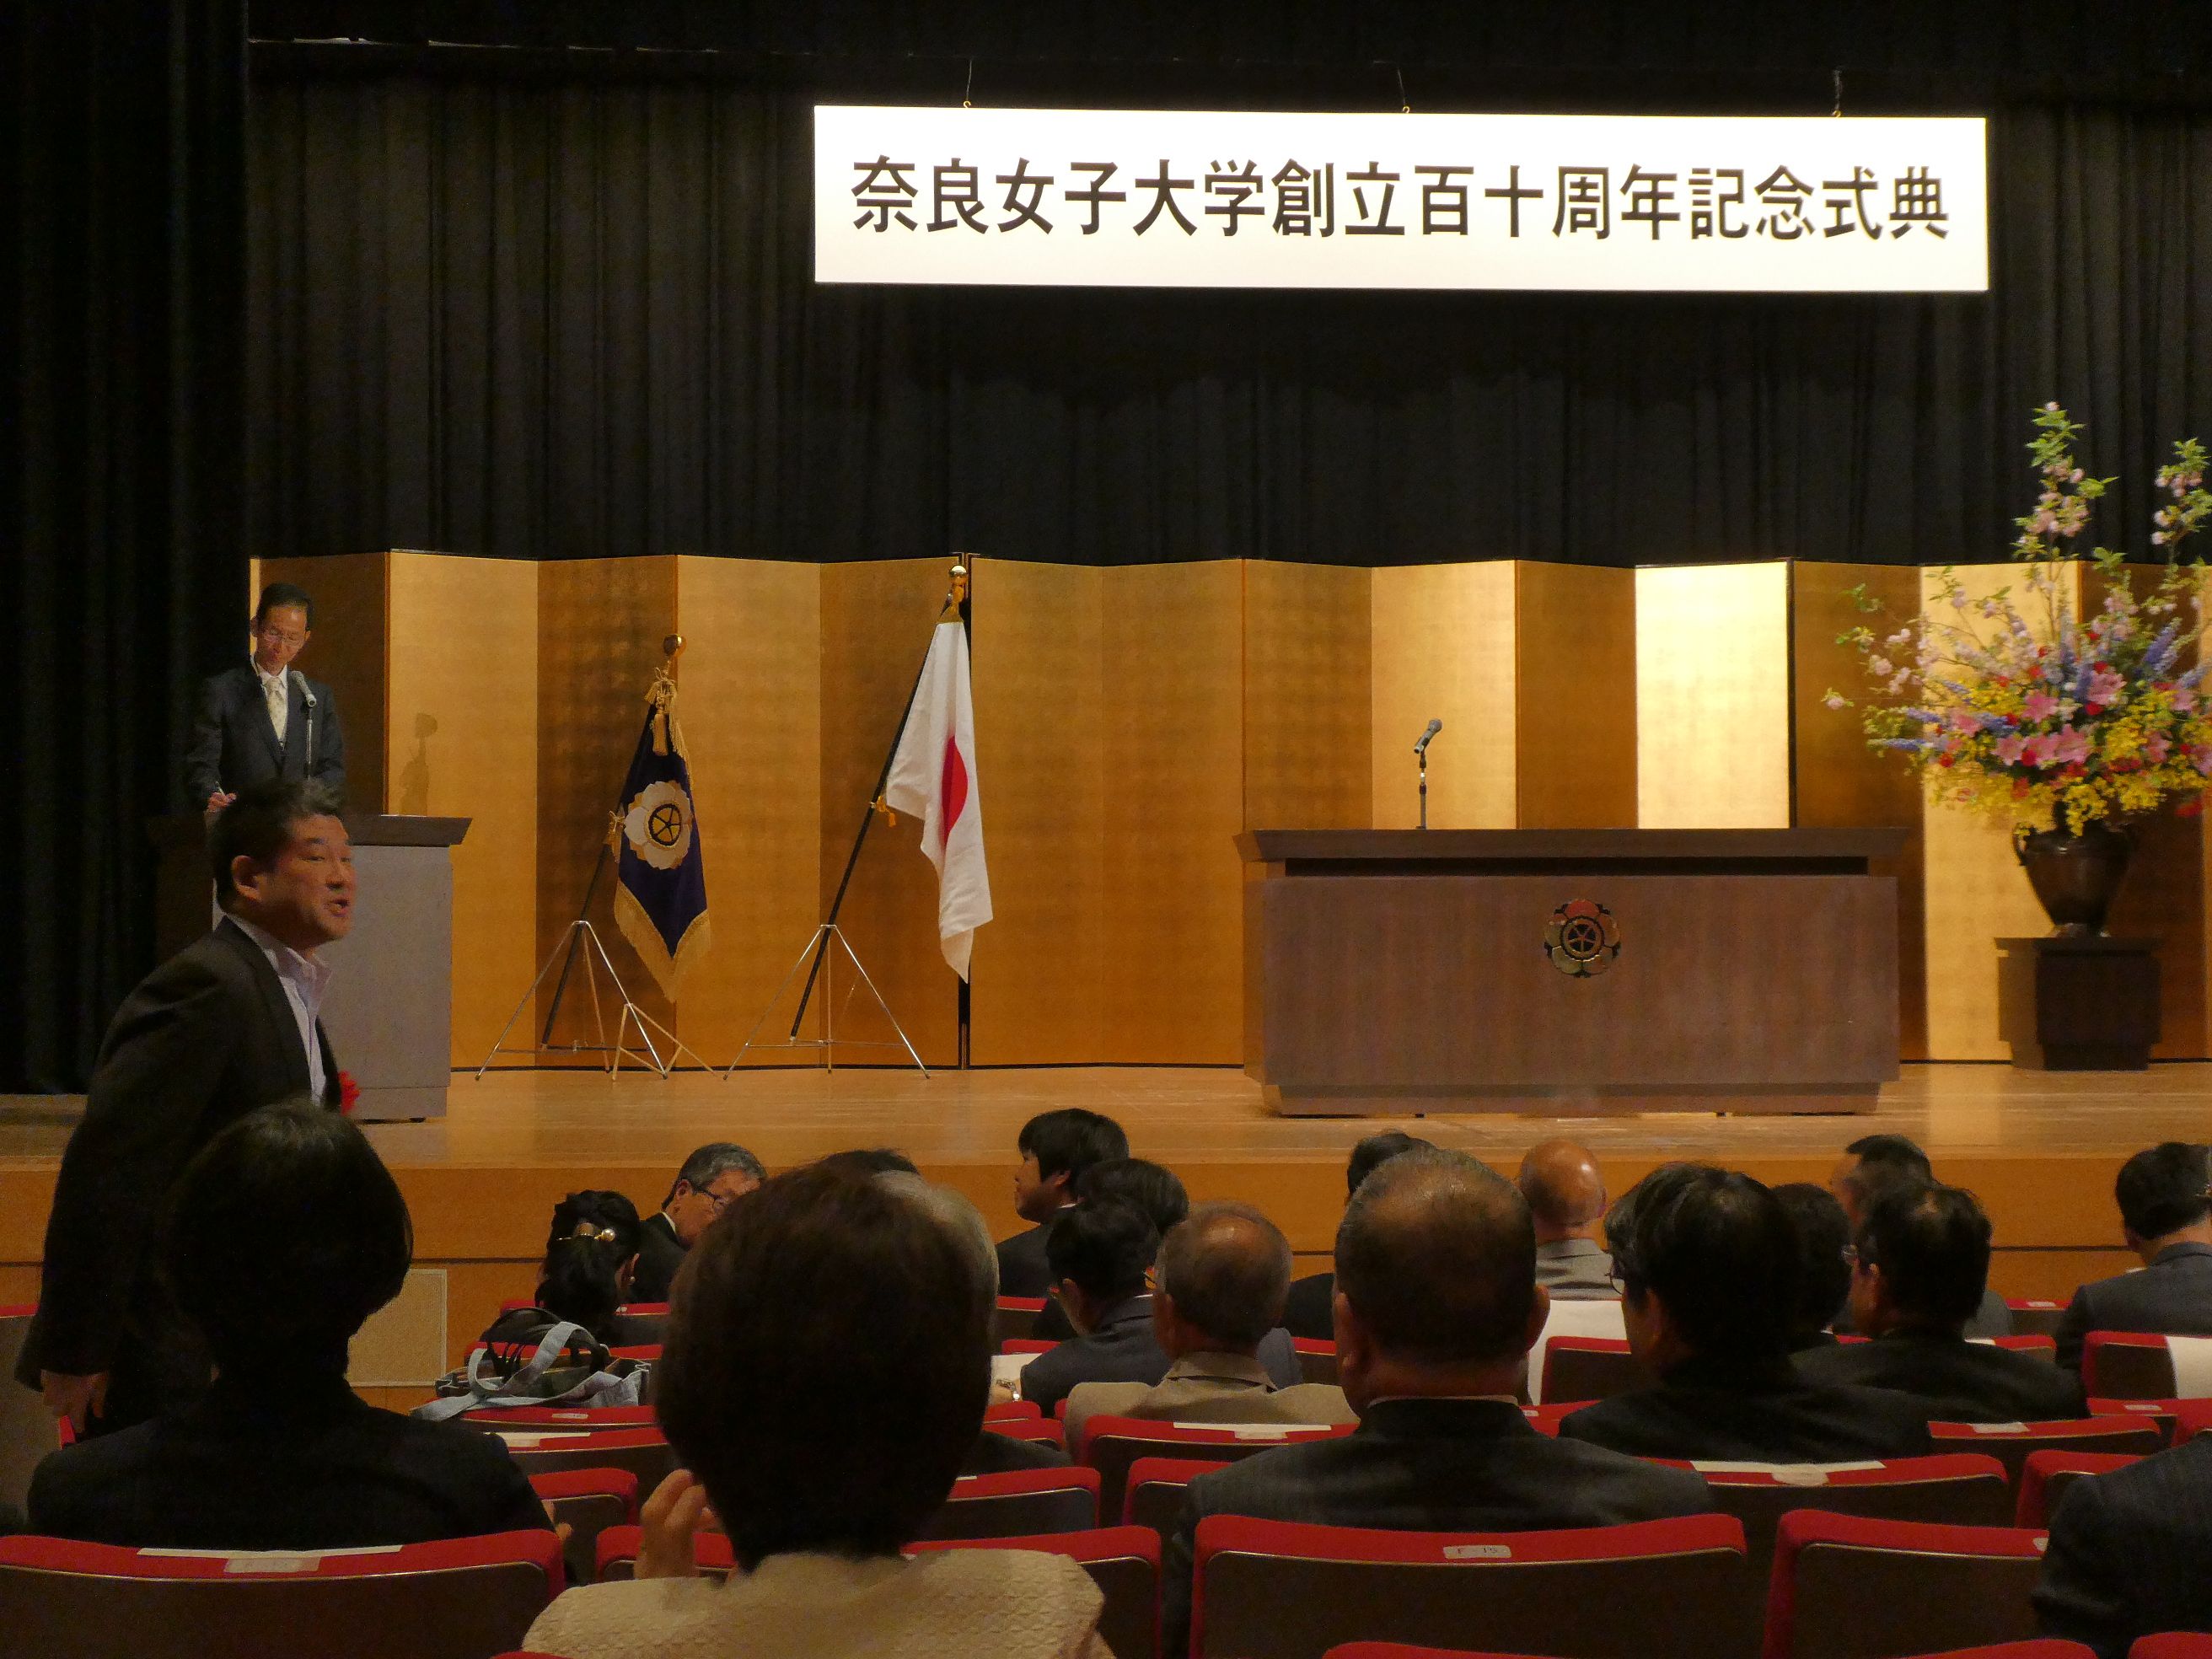 奈良女子大学創立110周年記念式典の画像